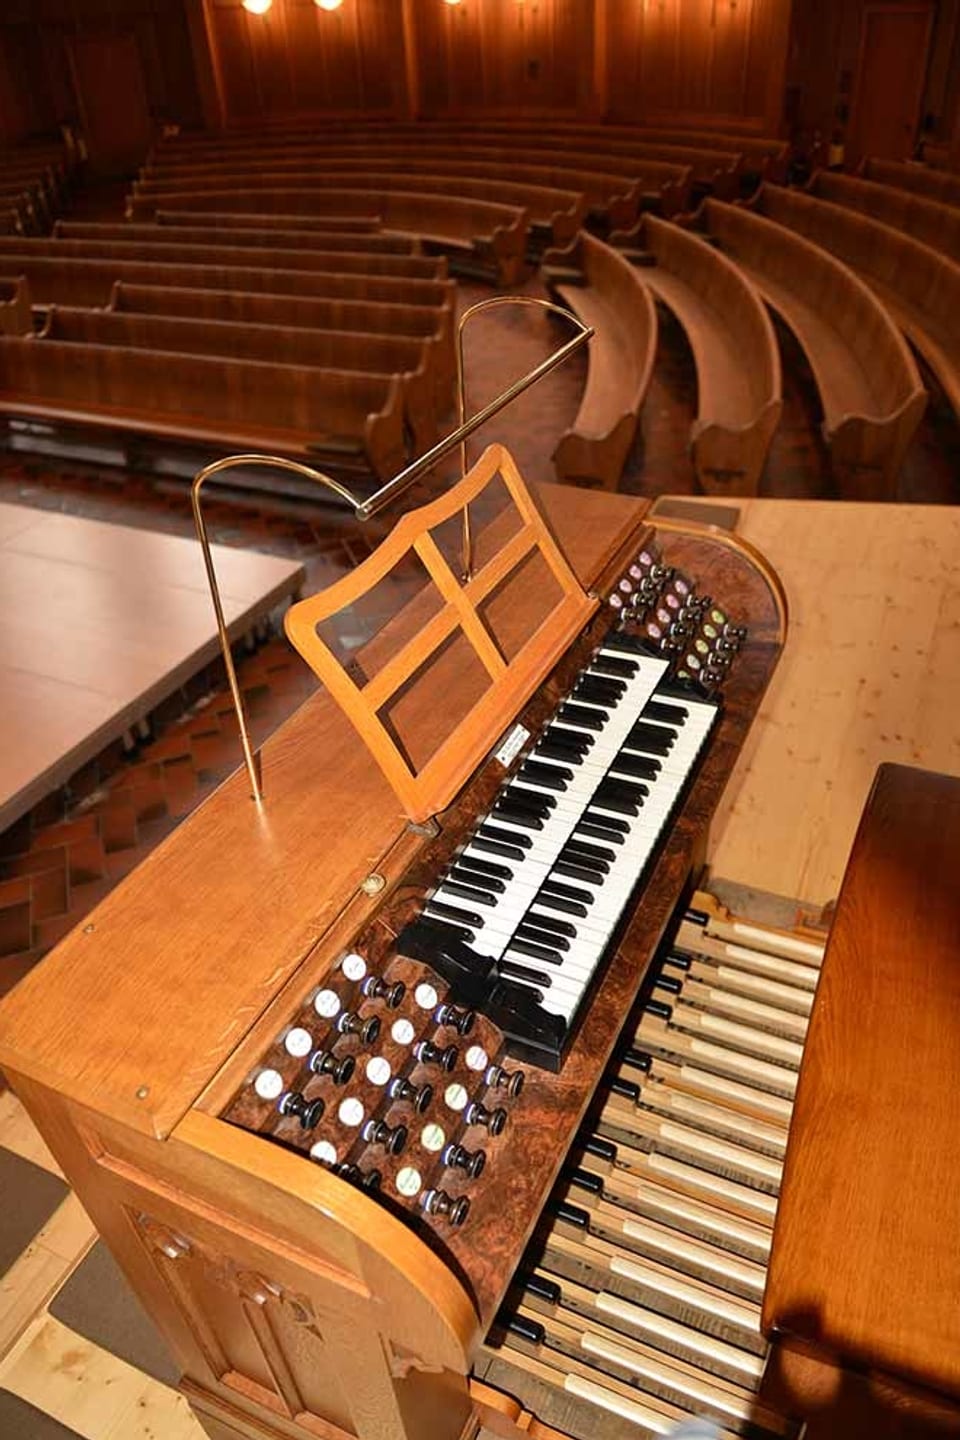 Die Klaviatur der Orgel mit weissen und schwarzen Tasten, den Knöpfen für die Register und den Balken für die Füsse.